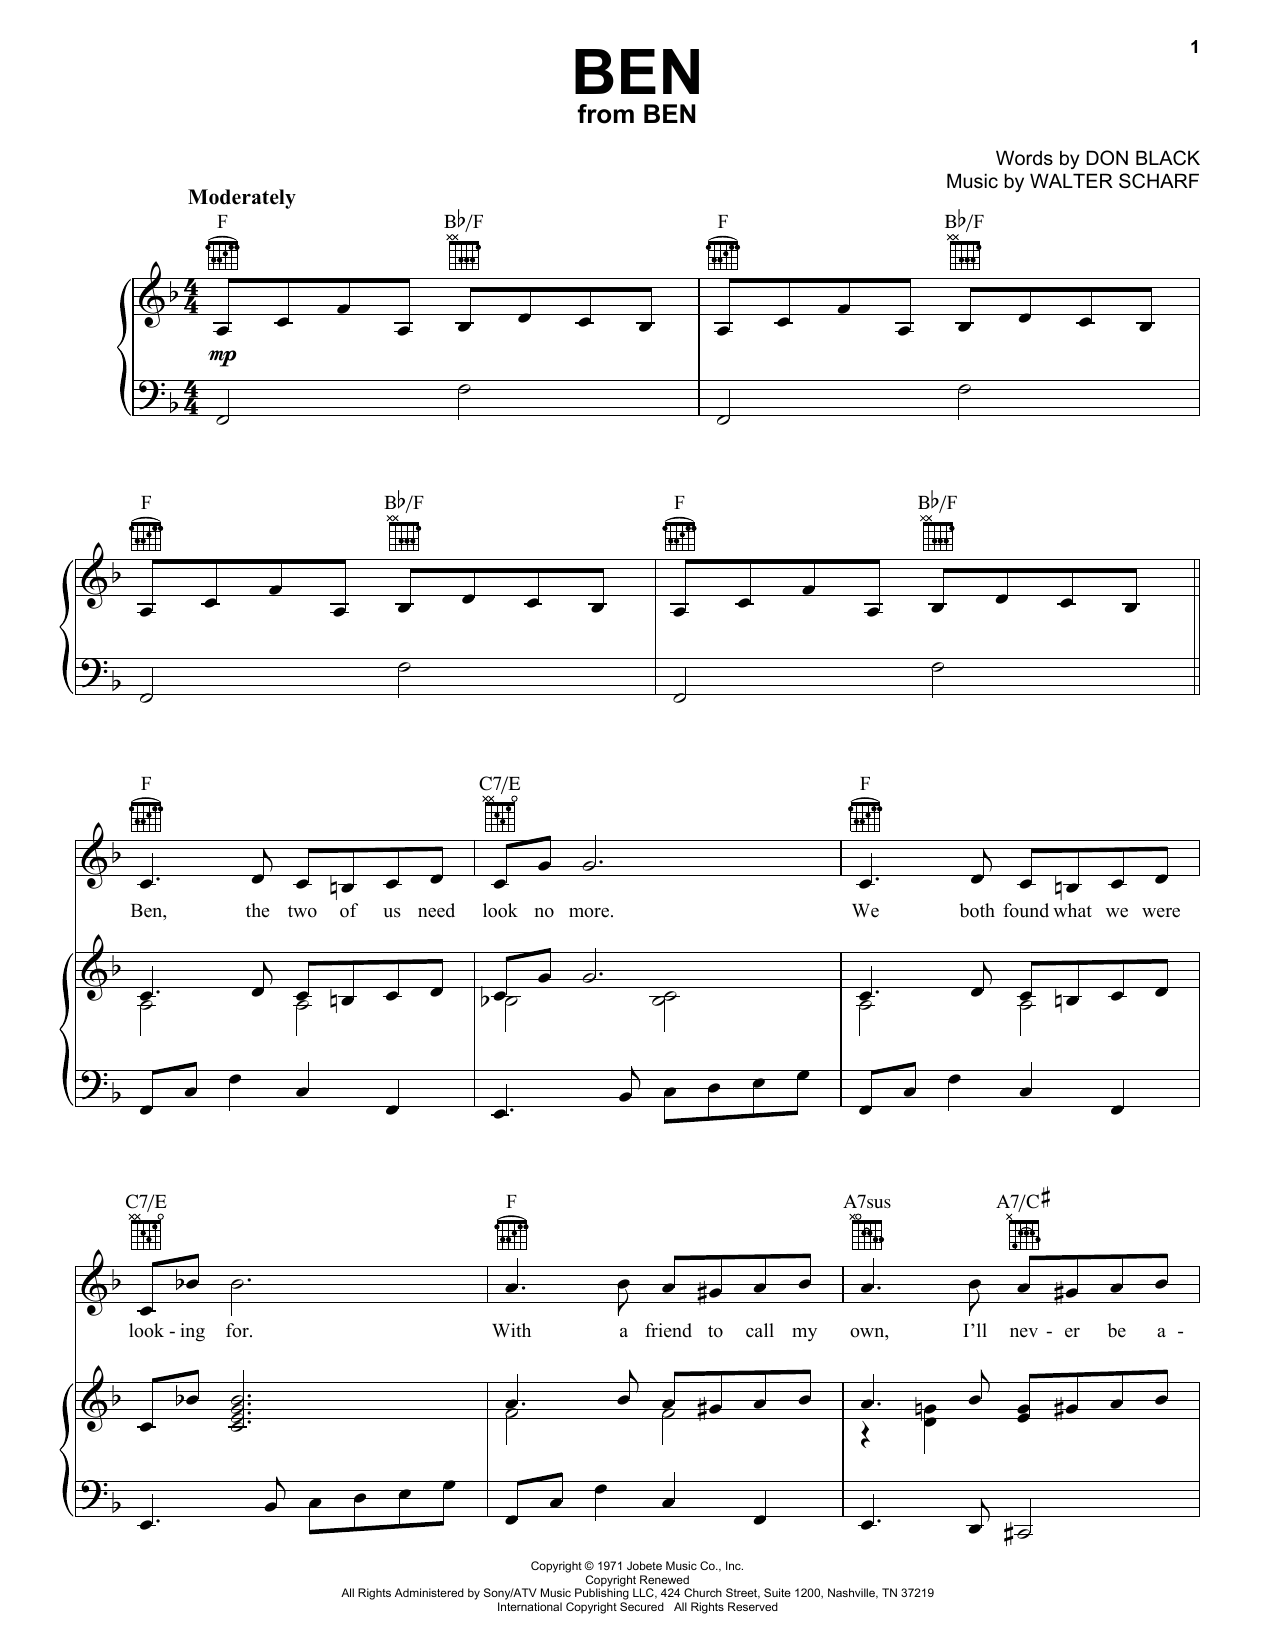 Michael Jackson Ben Sheet Music Notes & Chords for Lyrics & Chords - Download or Print PDF